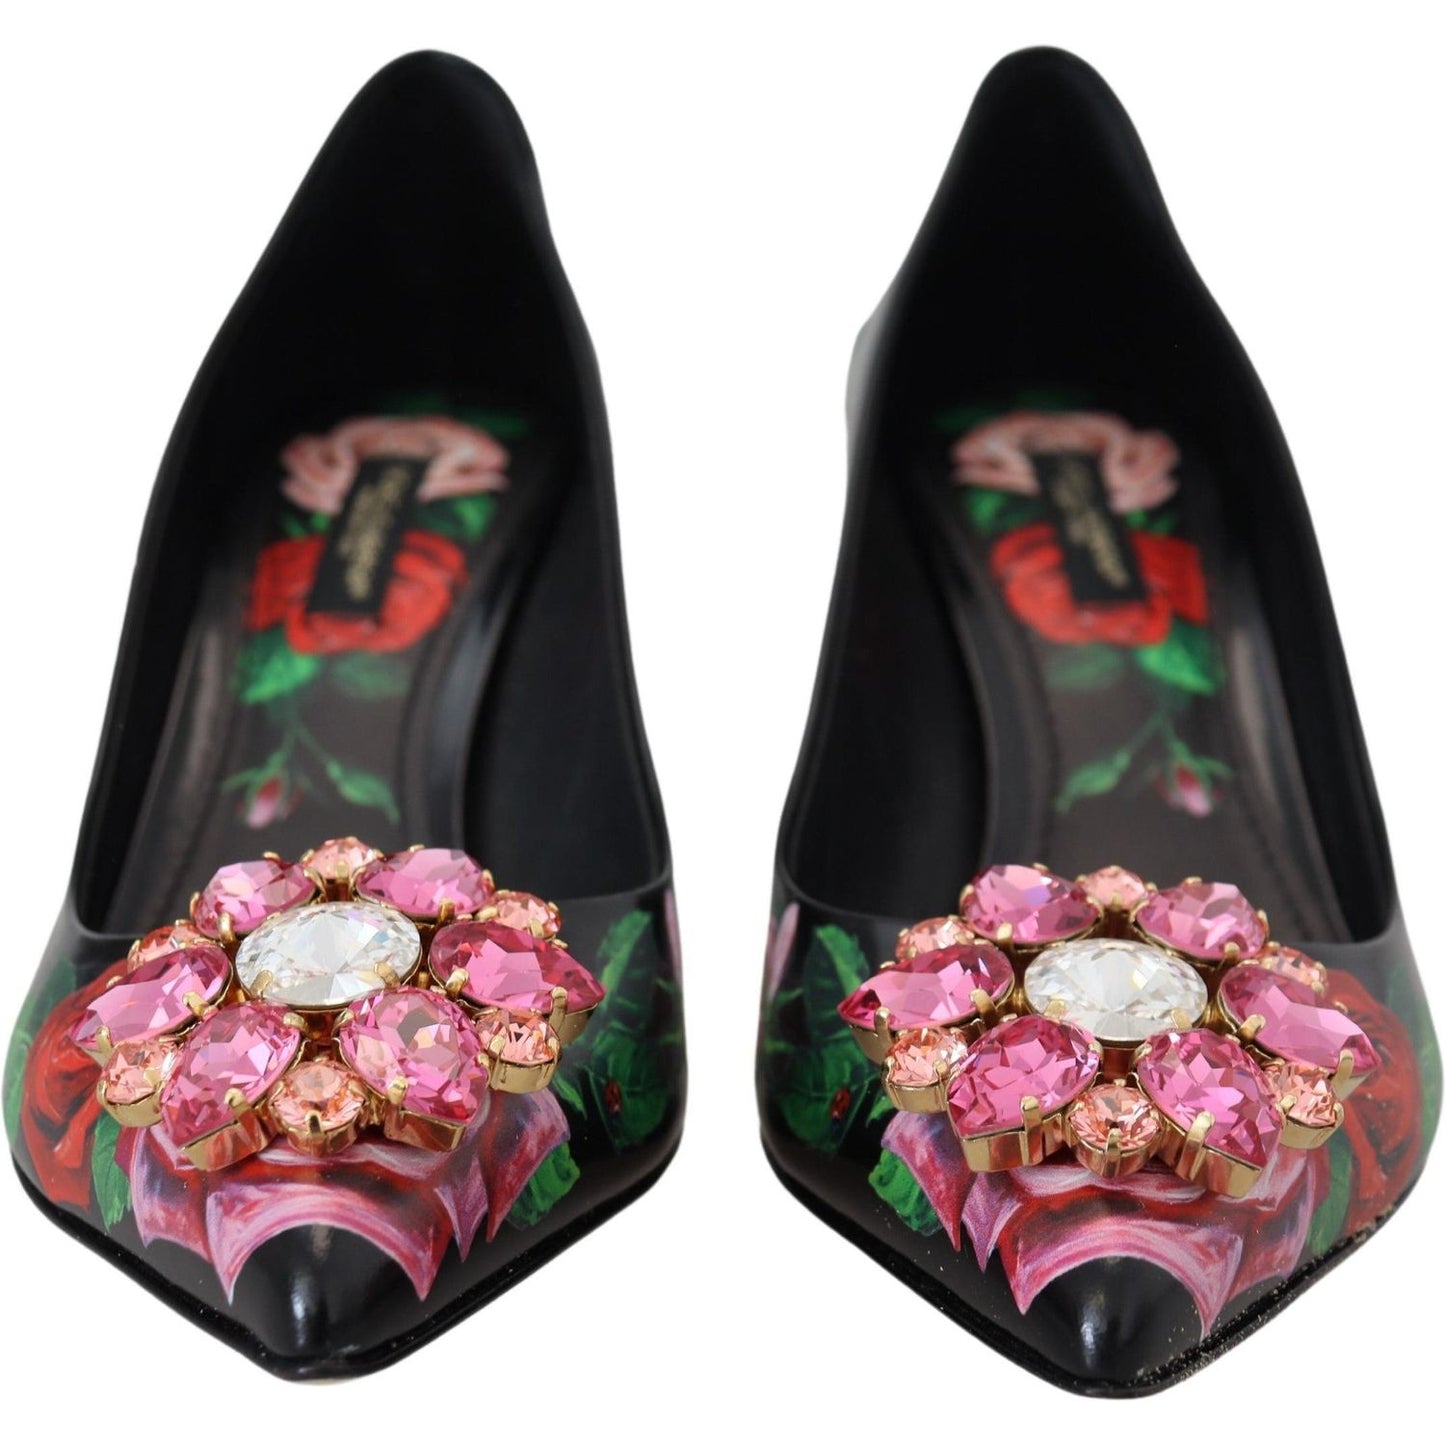 Dolce & Gabbana Elegant Floral Crystal Pumps black-floral-print-crystal-heels-pumps-shoes